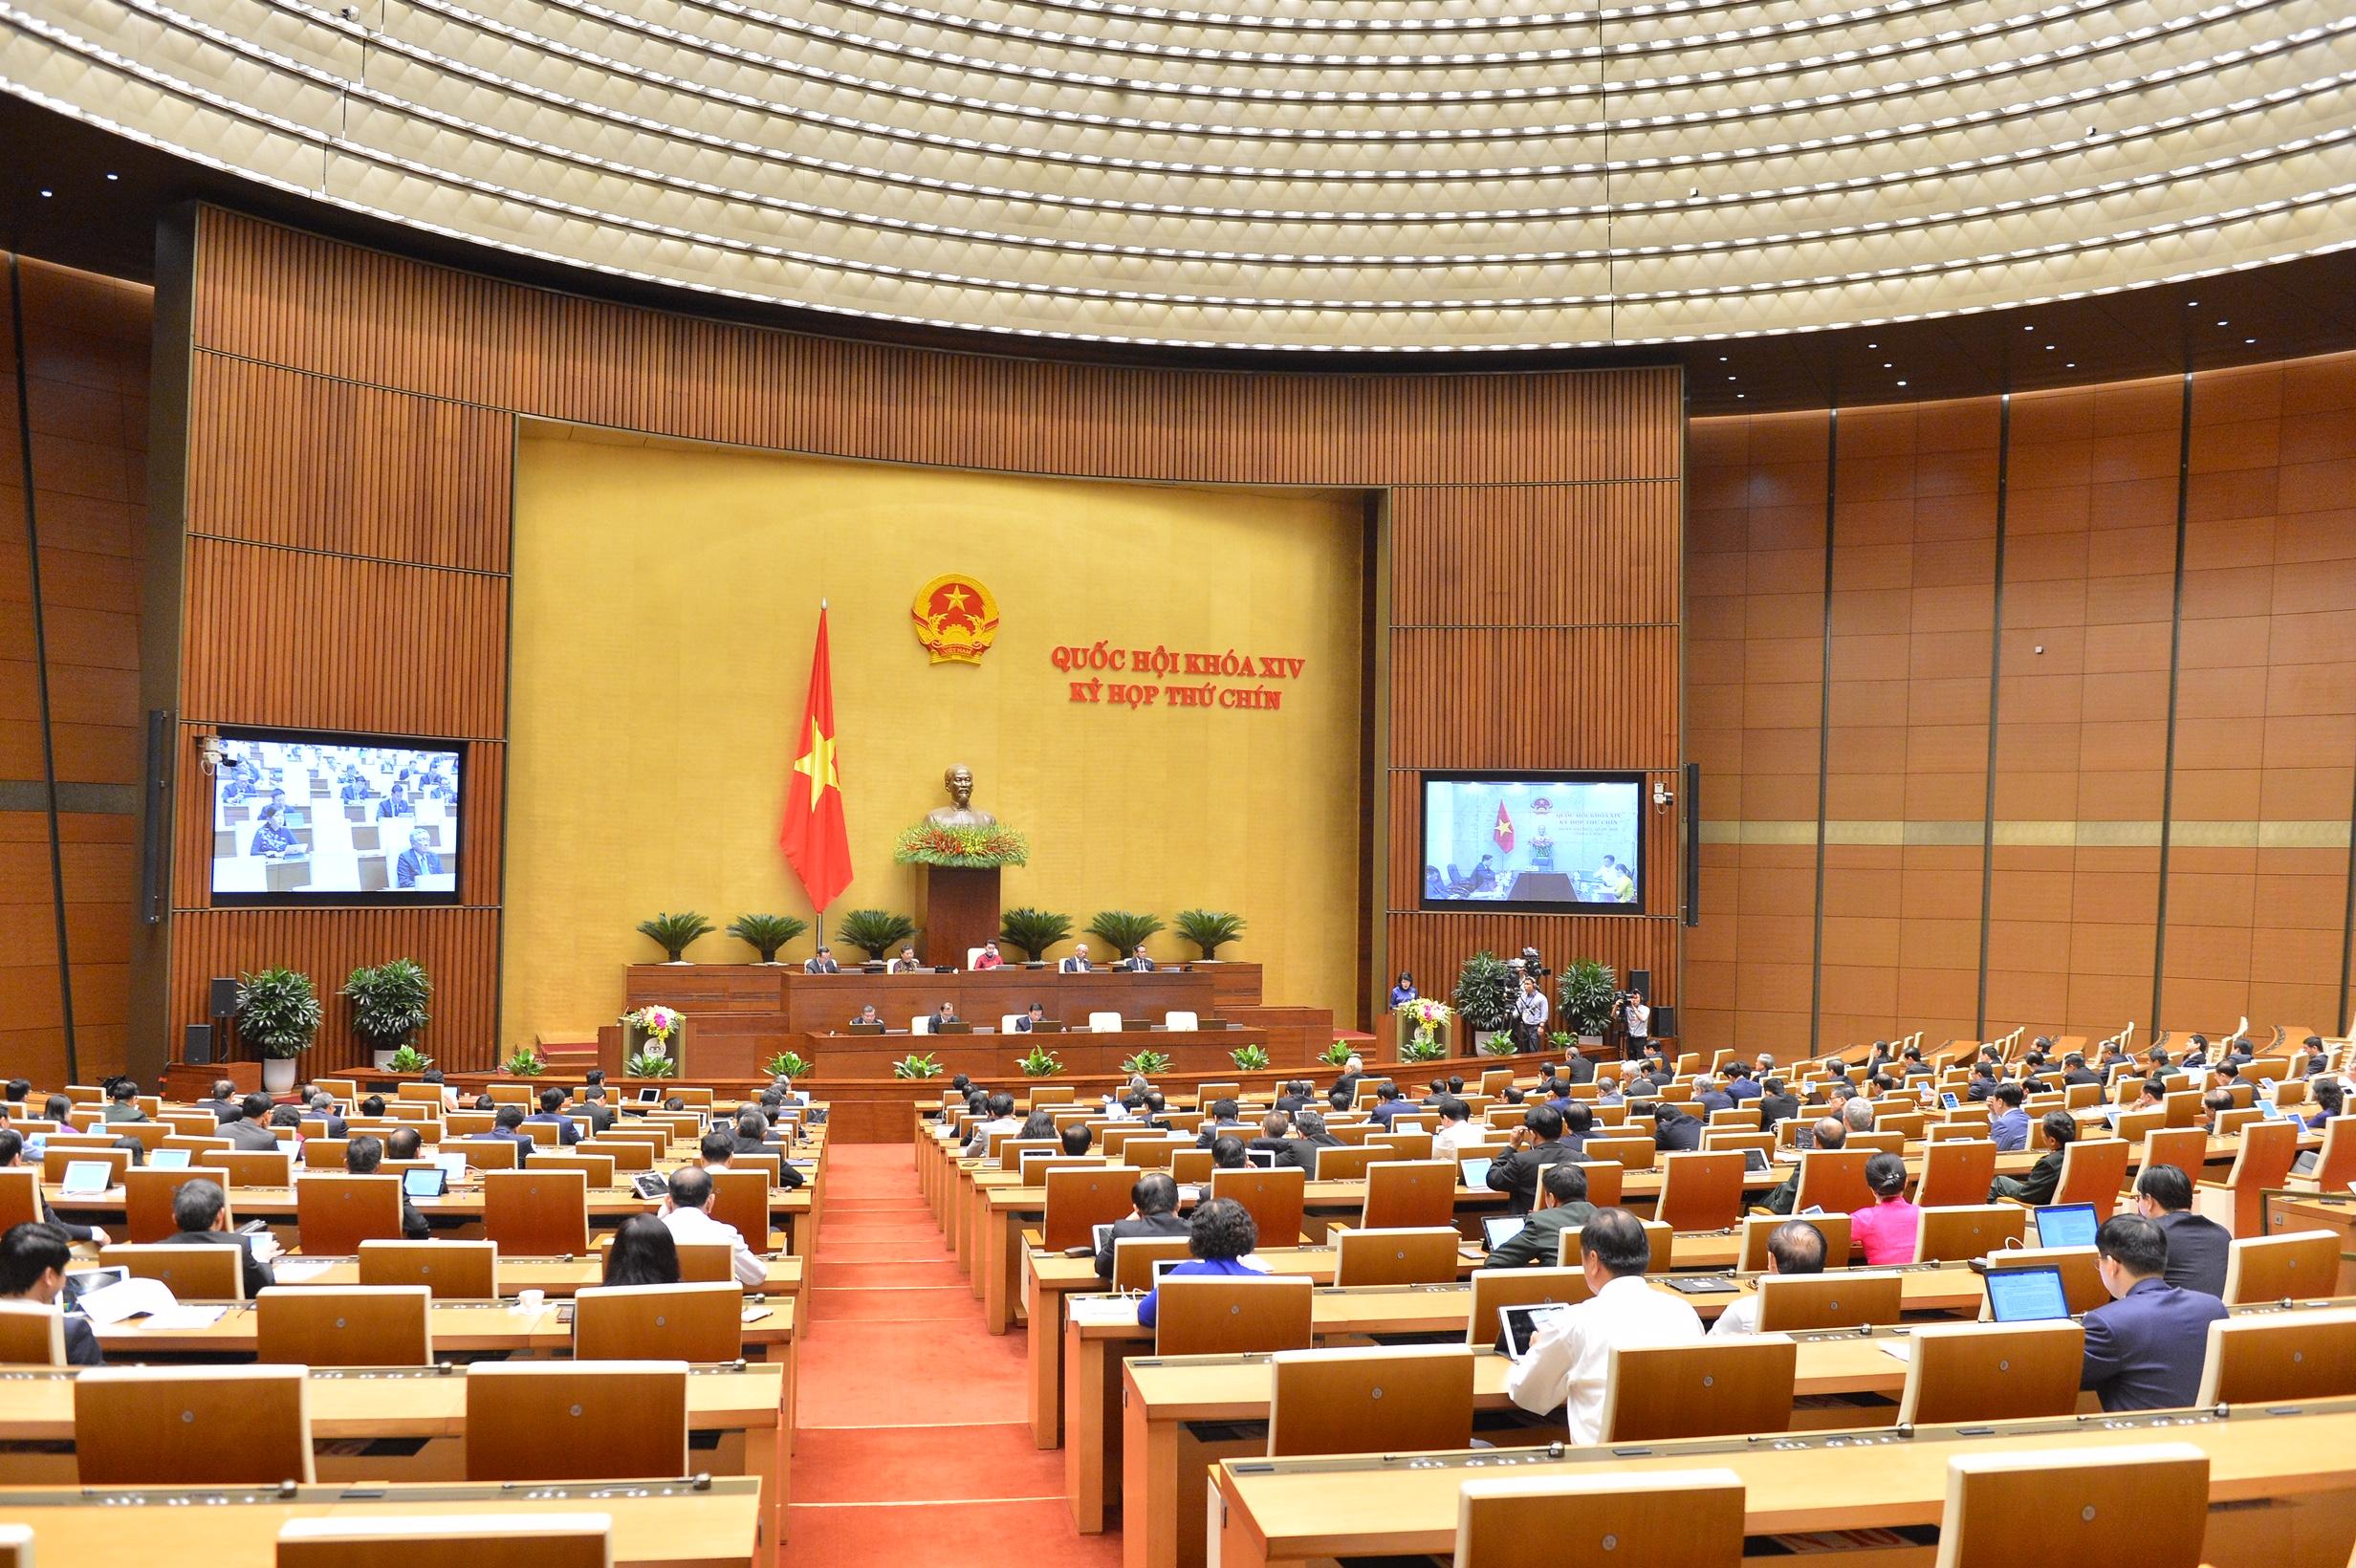 Ngày 8/6/2020, Quốc hội phê chuẩn 2 Hiệp định EVFTA và EVIPA giữa Việt Nam - EU nắm bắt thời cơ, Hiệp định EVFTA có hiệu lực từ 1/8/2020